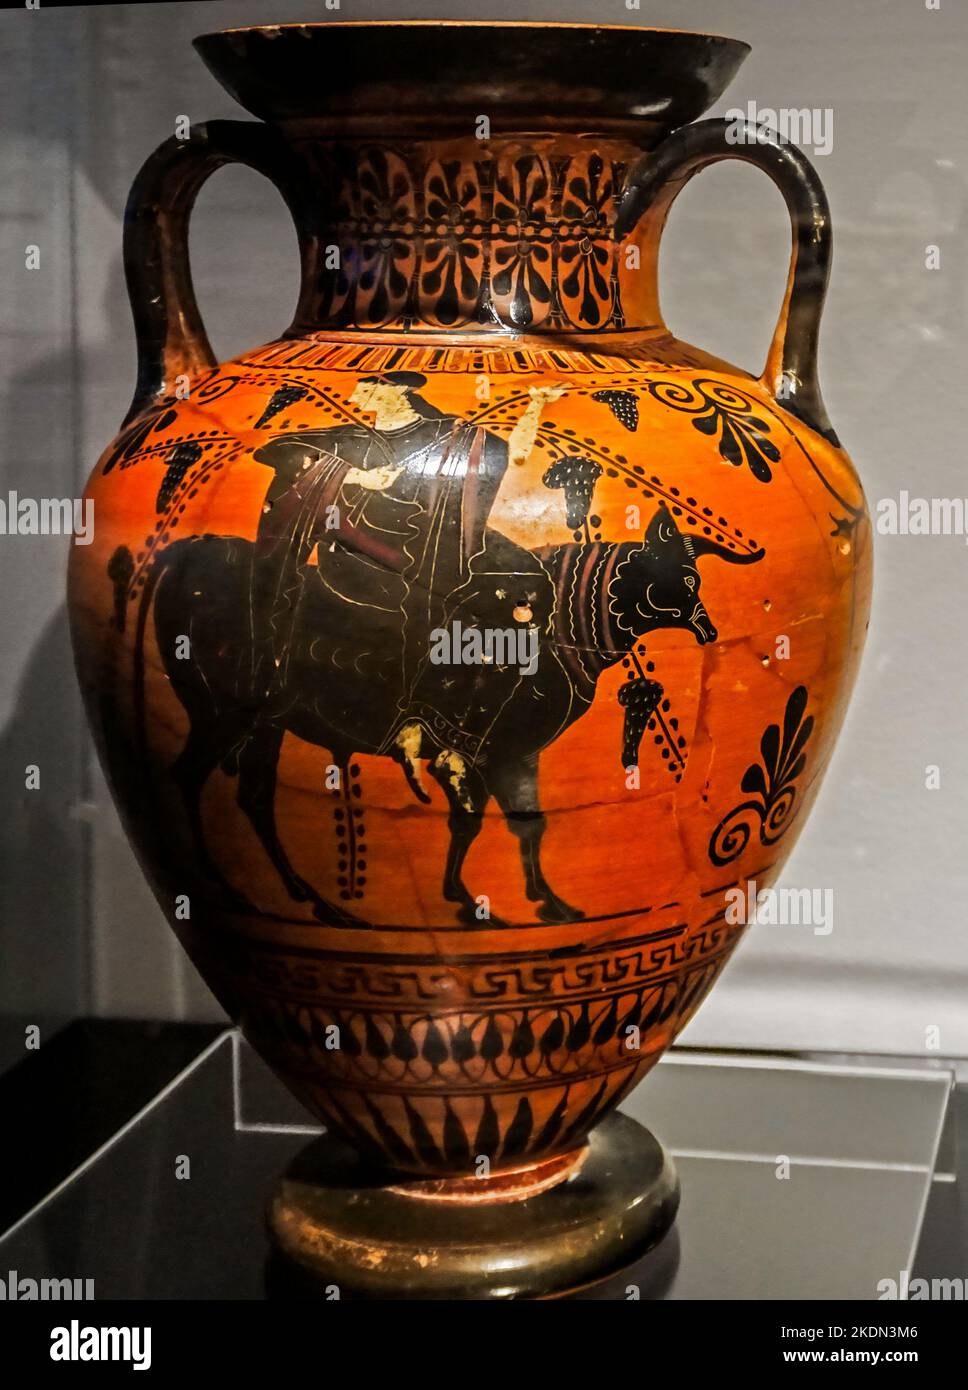 Un vase étrusque exposé au Musée d'Histoire romaine de Nîmes France. Banque D'Images